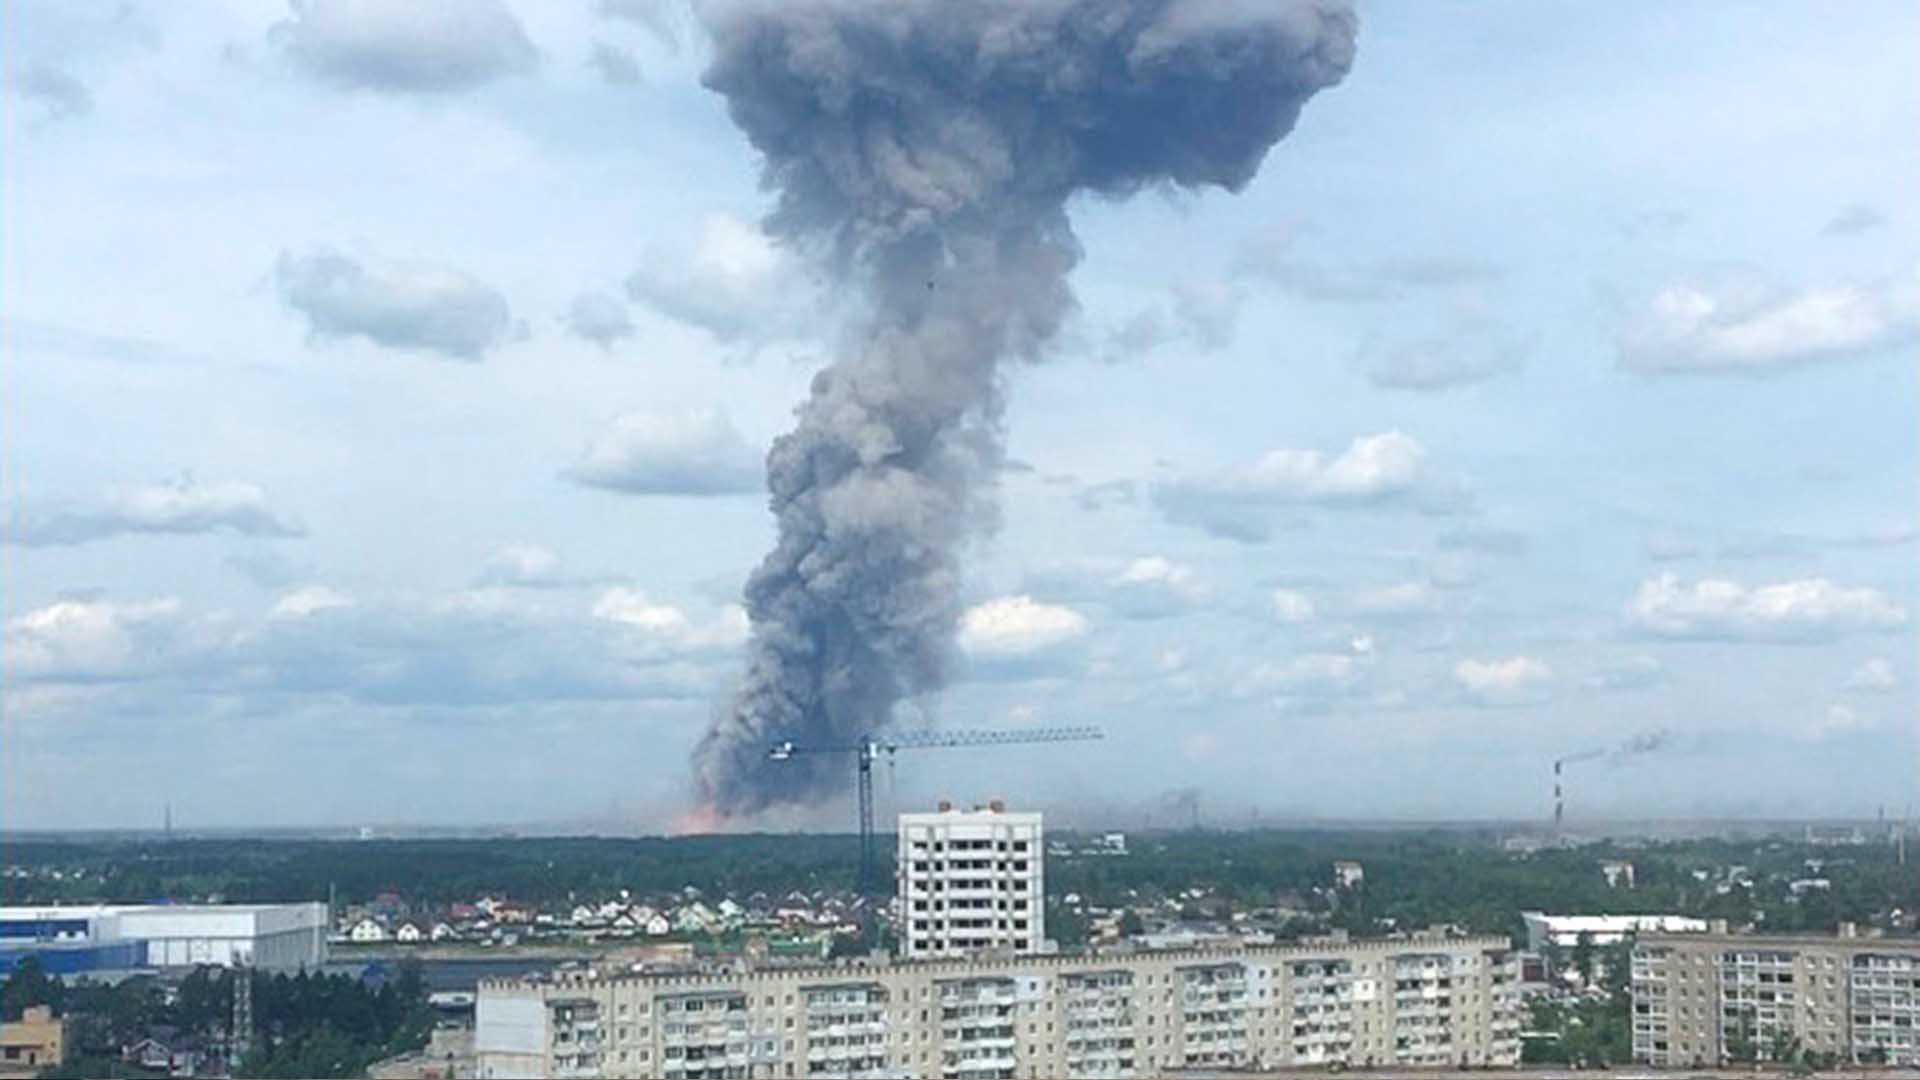 Radiactividad superó 16 veces el nivel habitual tras explosión en base rusa